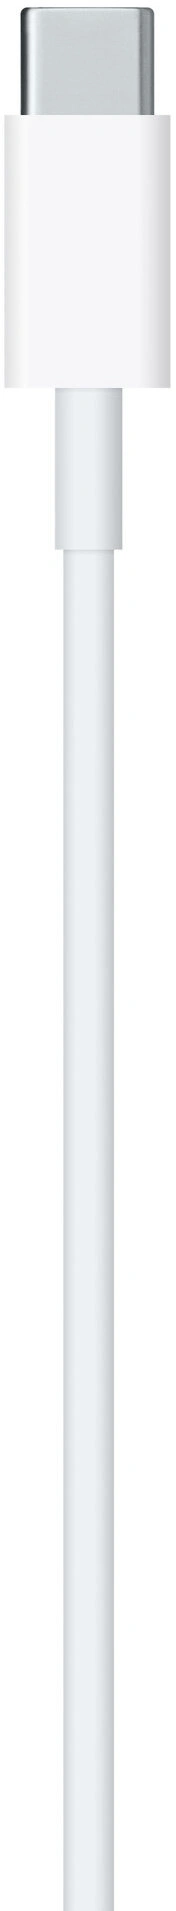 Apple kabel USB-C - Lightning, 1m, bílá